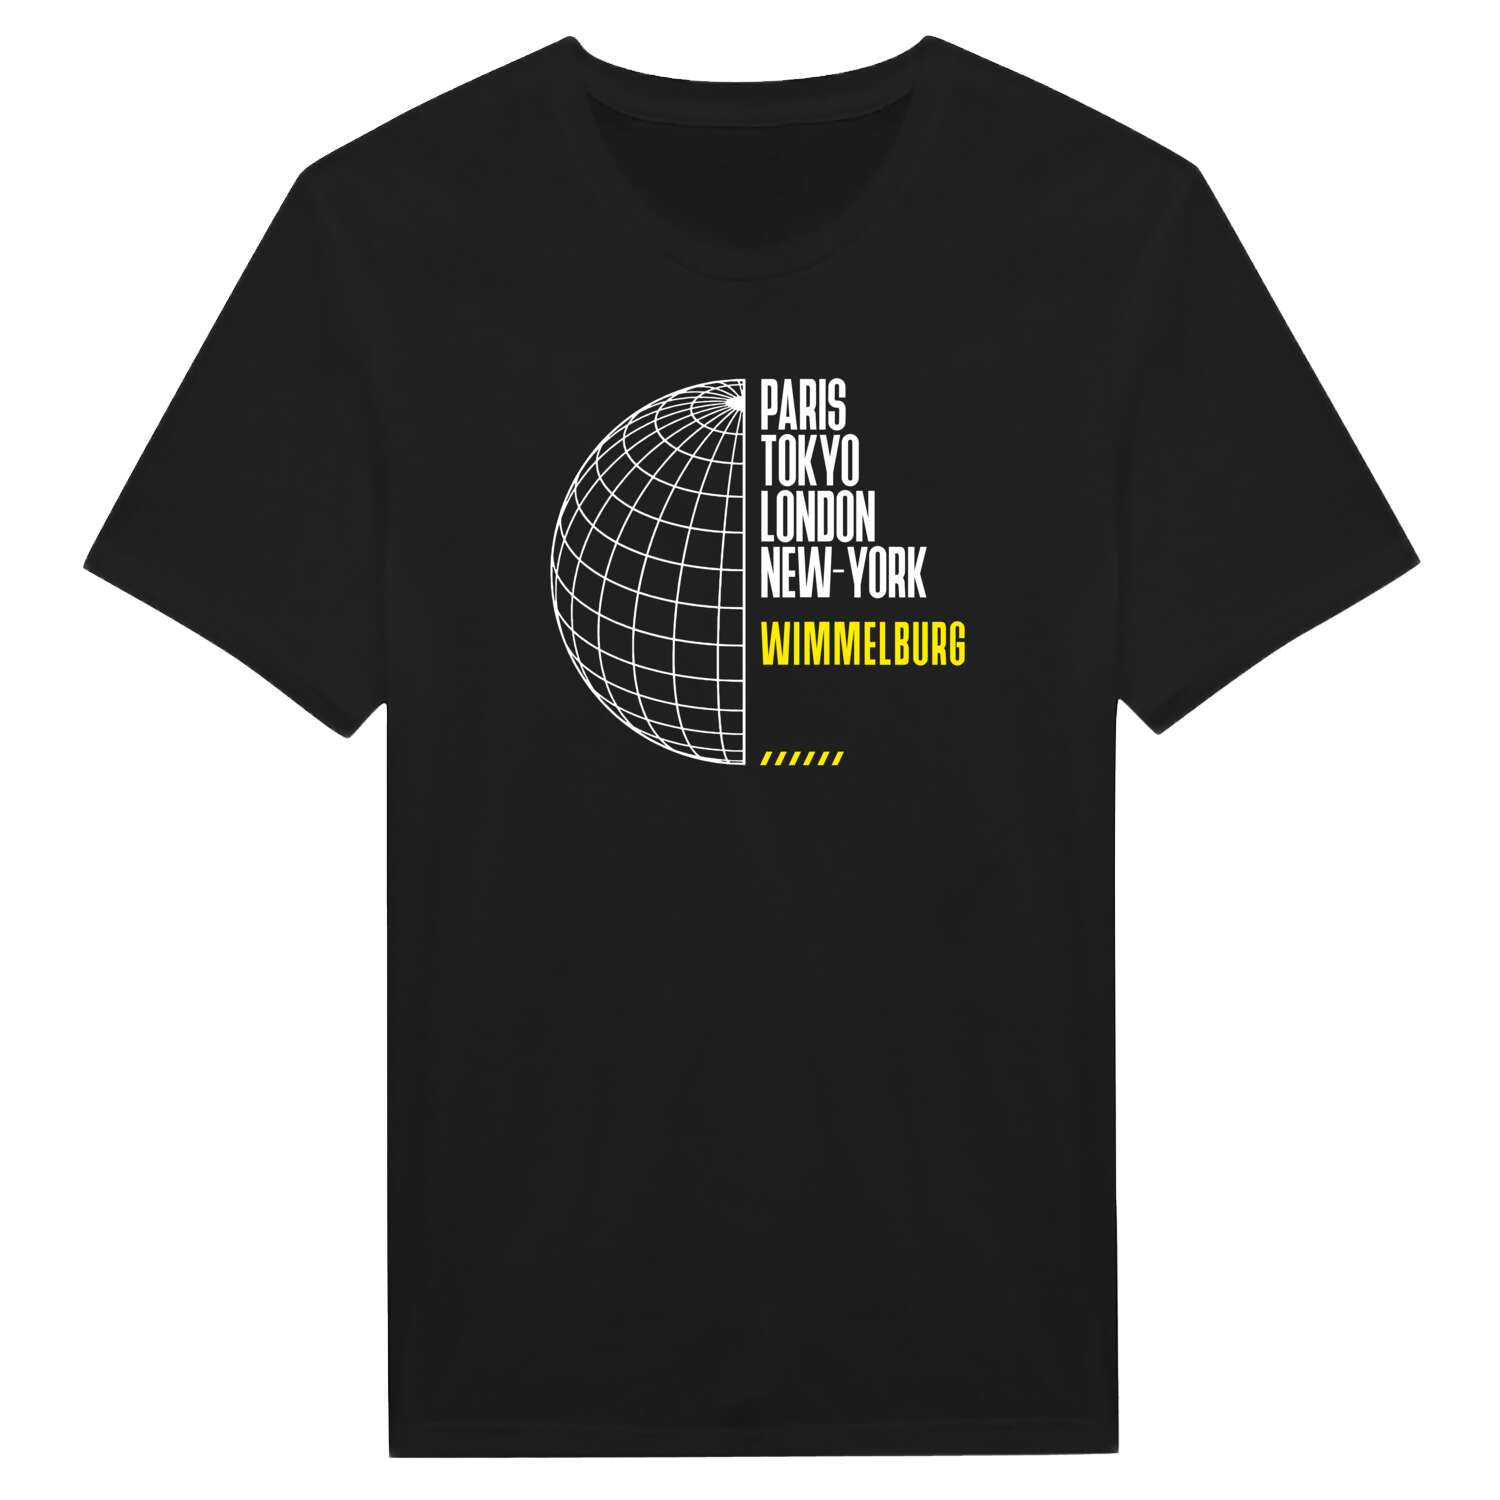 Wimmelburg T-Shirt »Paris Tokyo London«